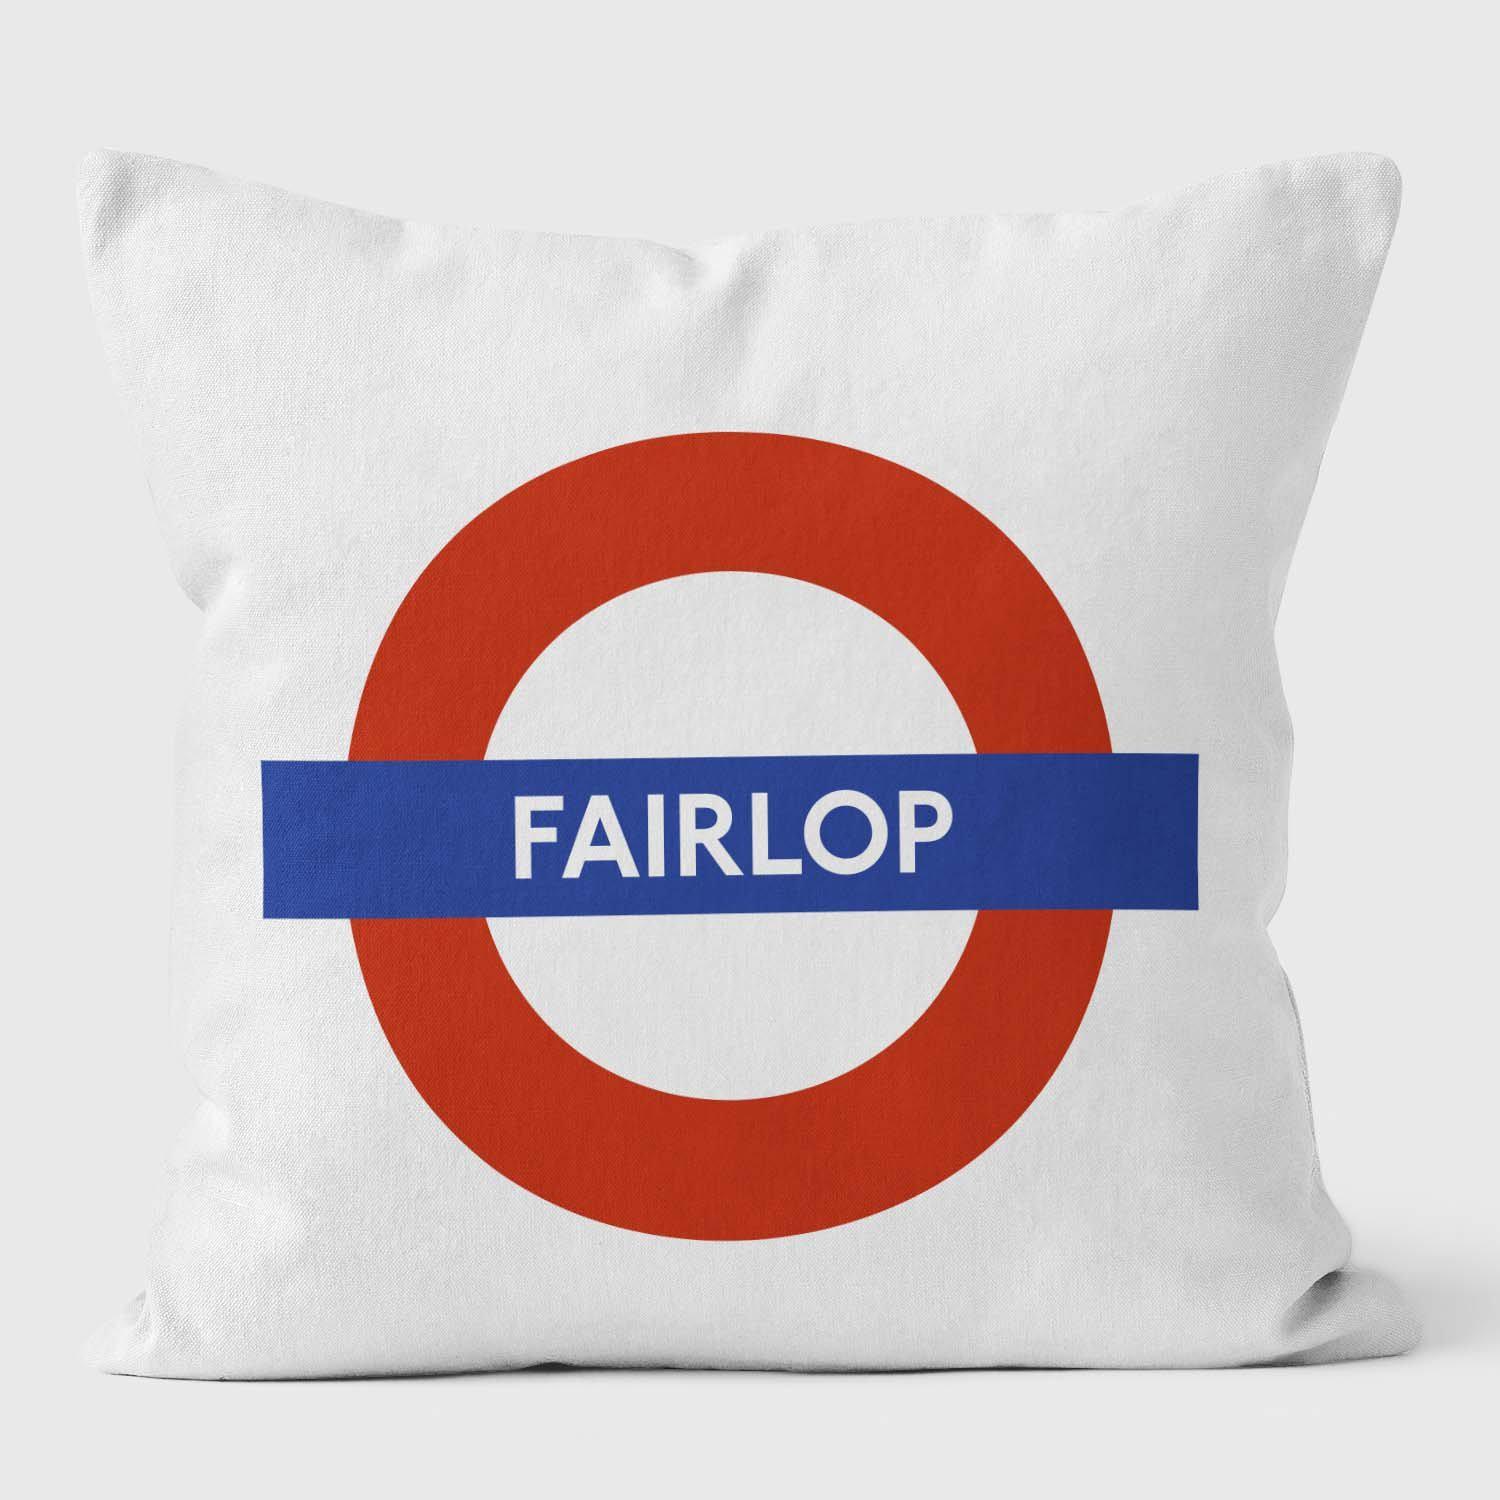 Fairlop London Underground Tube Station Roundel Cushion - Handmade Cushions UK - WeLoveCushions